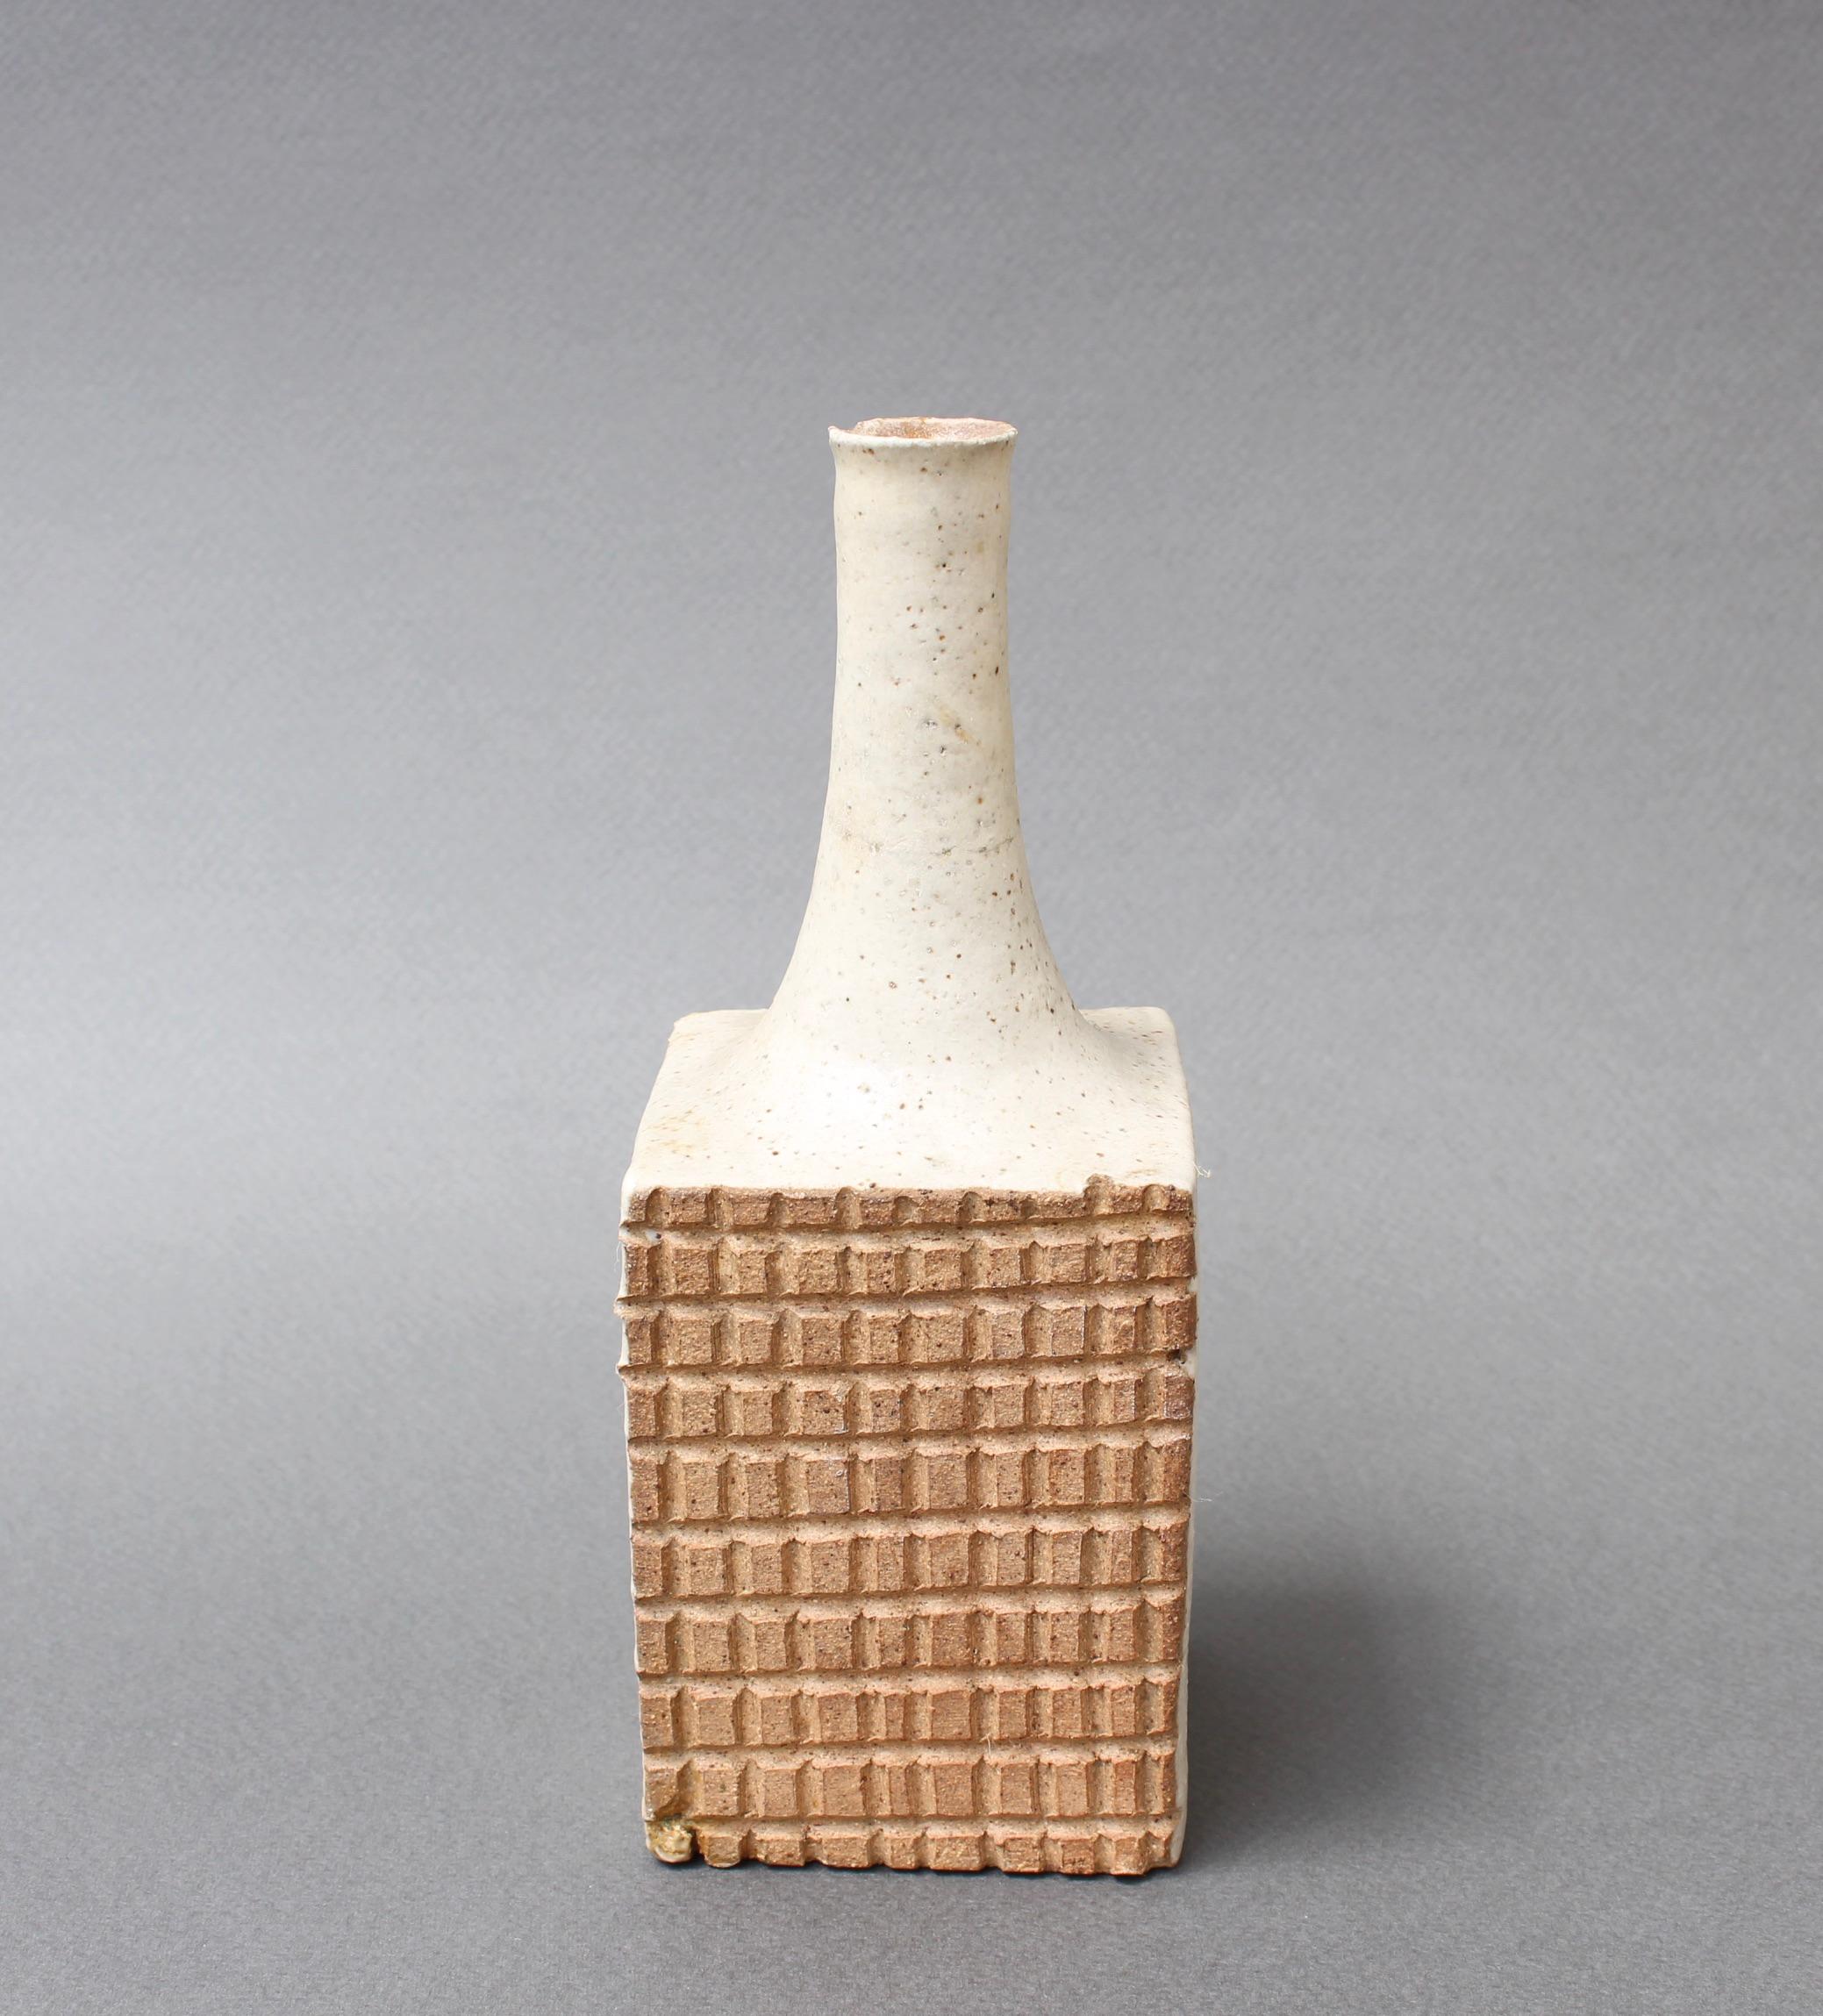 Italian Ceramic Decorative Bottle by Bruno Gambone 'circa 1980s', Small 1